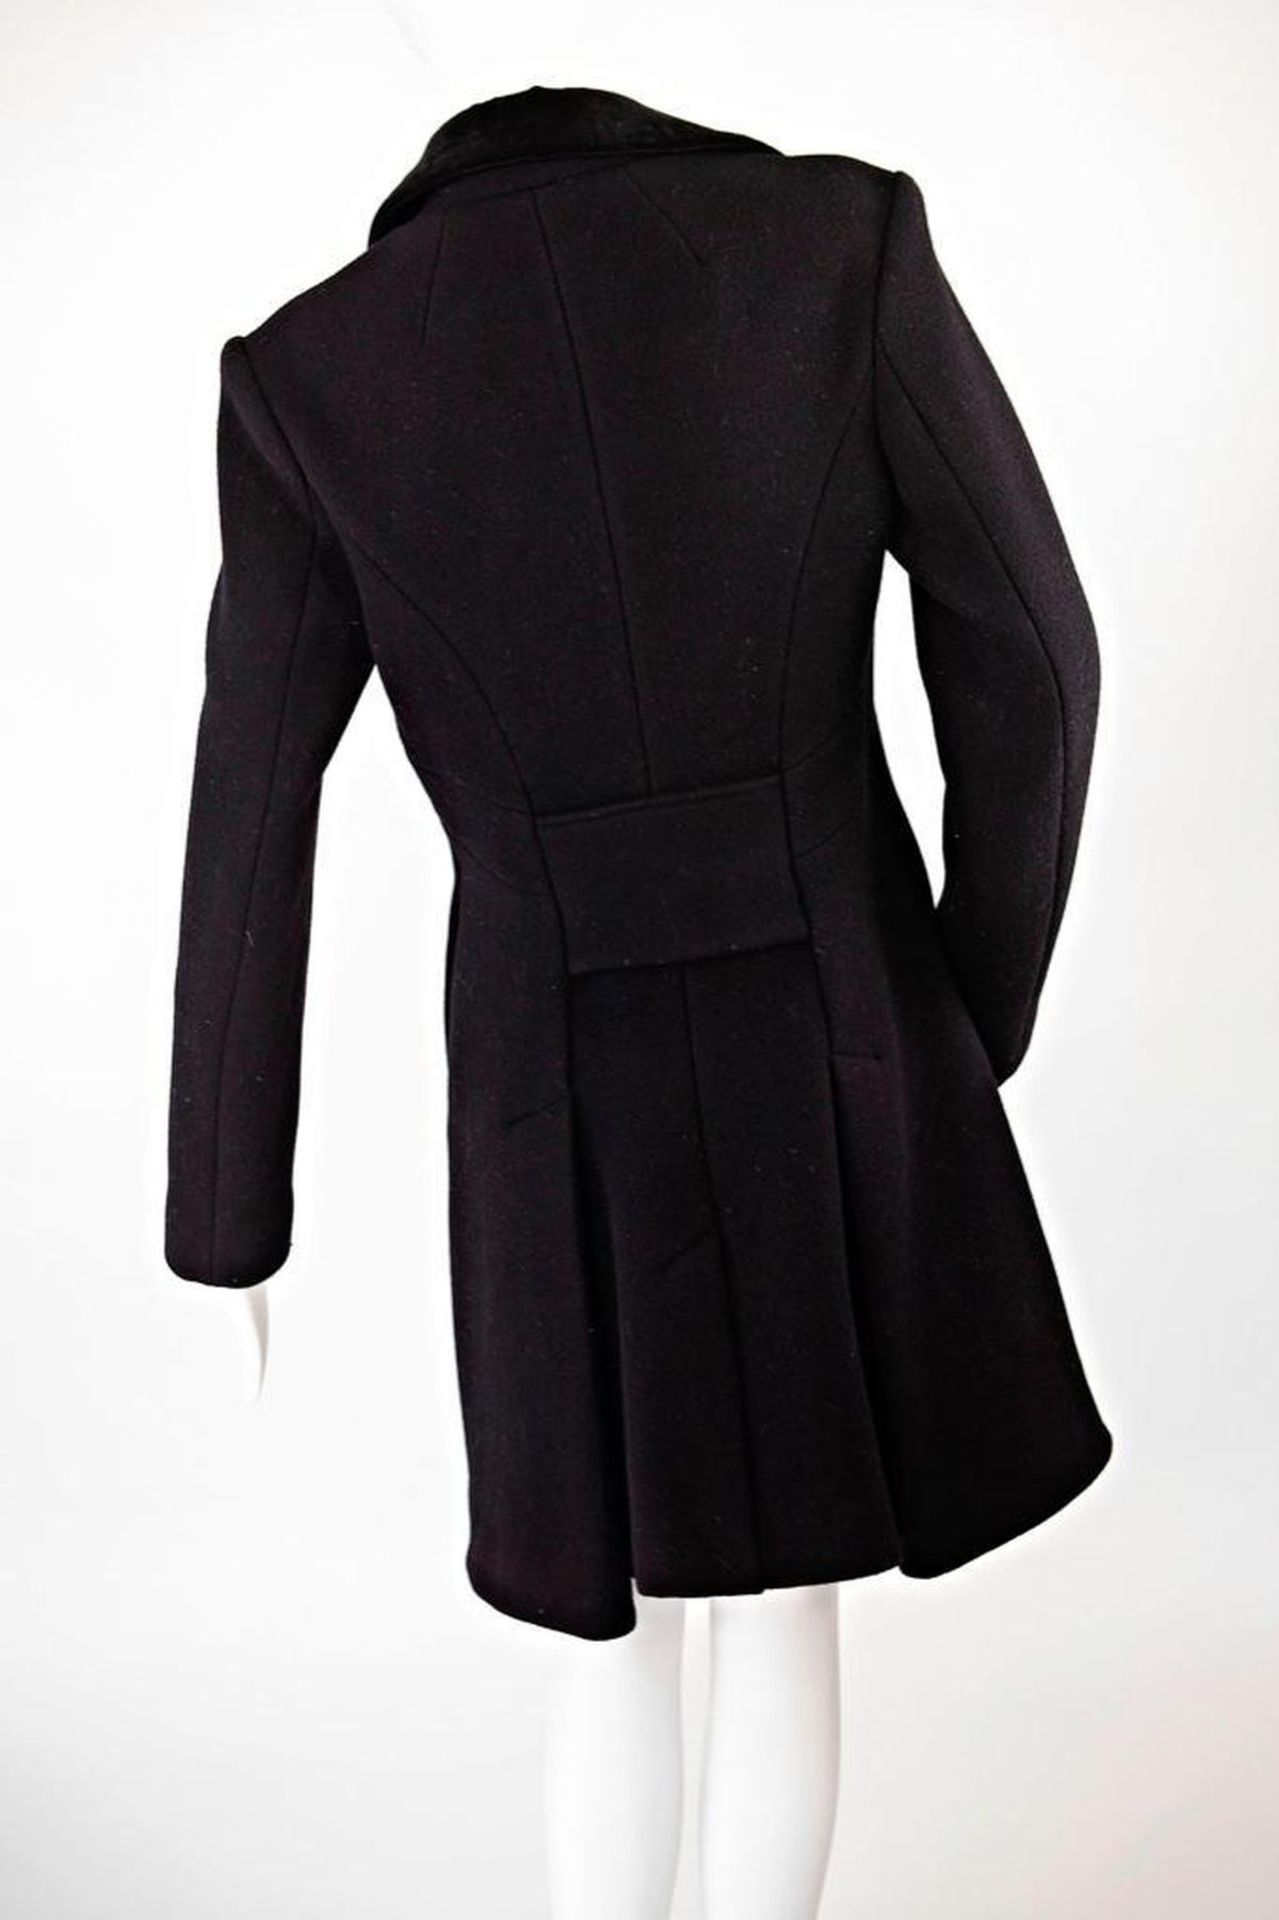 Alexander McQueen Wool Coat - Image 3 of 8